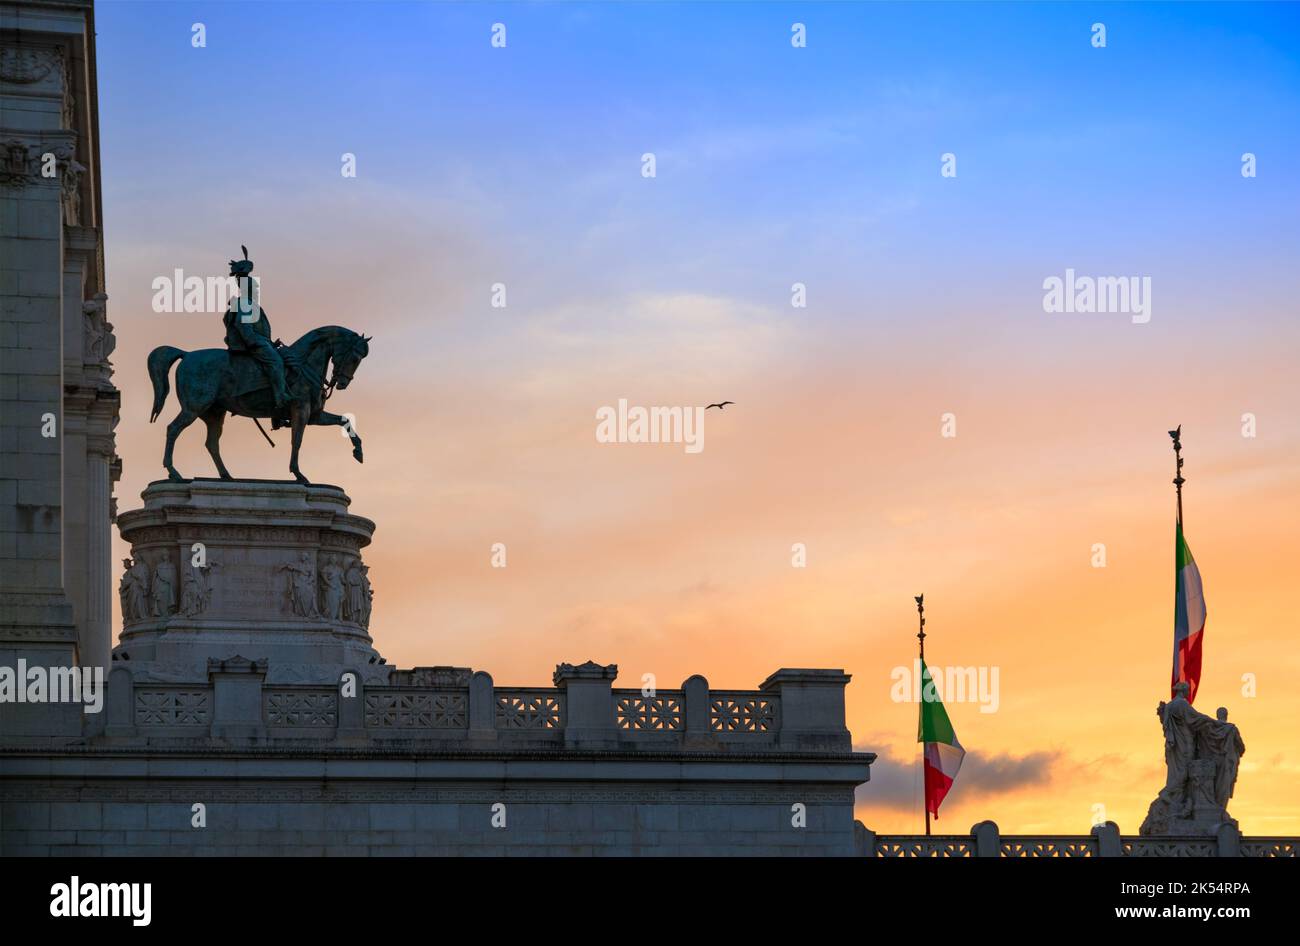 L'autel majestueux de la Patrie à Rome : c'est l'emblème de l'Italie dans le monde, symbole du changement, du Risorgimento et de la Constitution. Banque D'Images